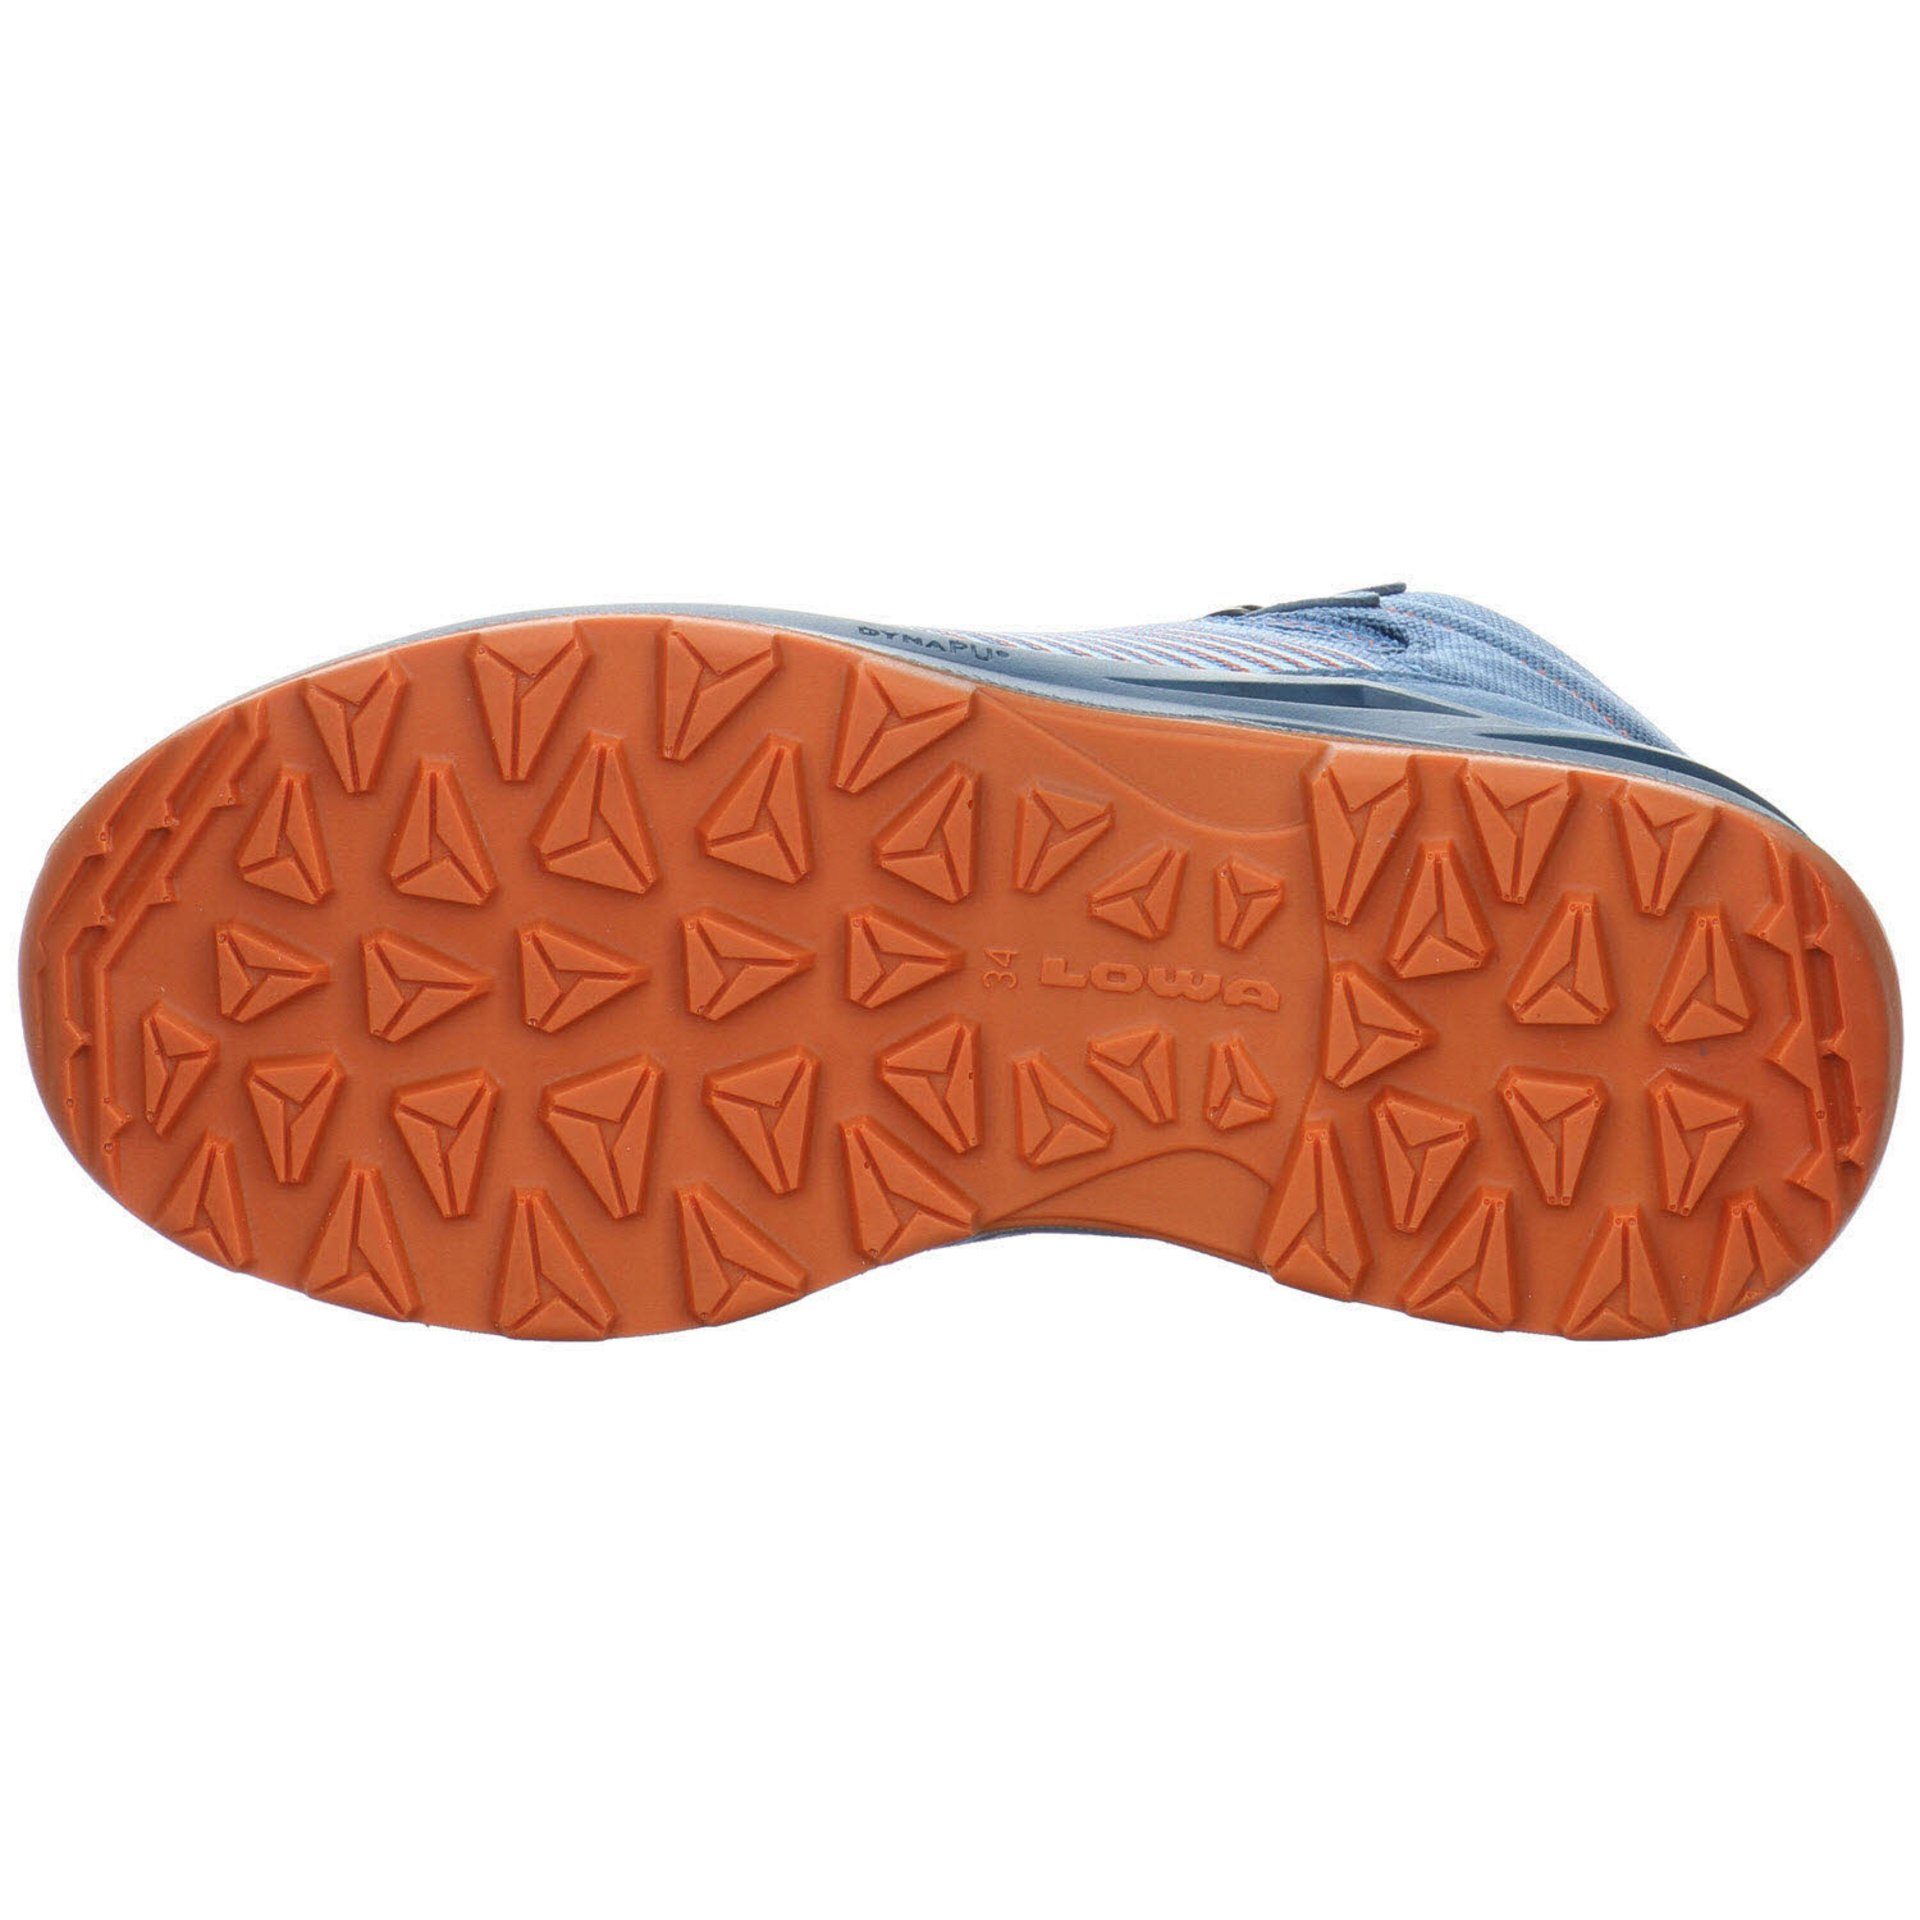 Lowa Schnürhalbschuhe skyblue/orange Jungen Outdoorschuh Leder-/Textilkombination